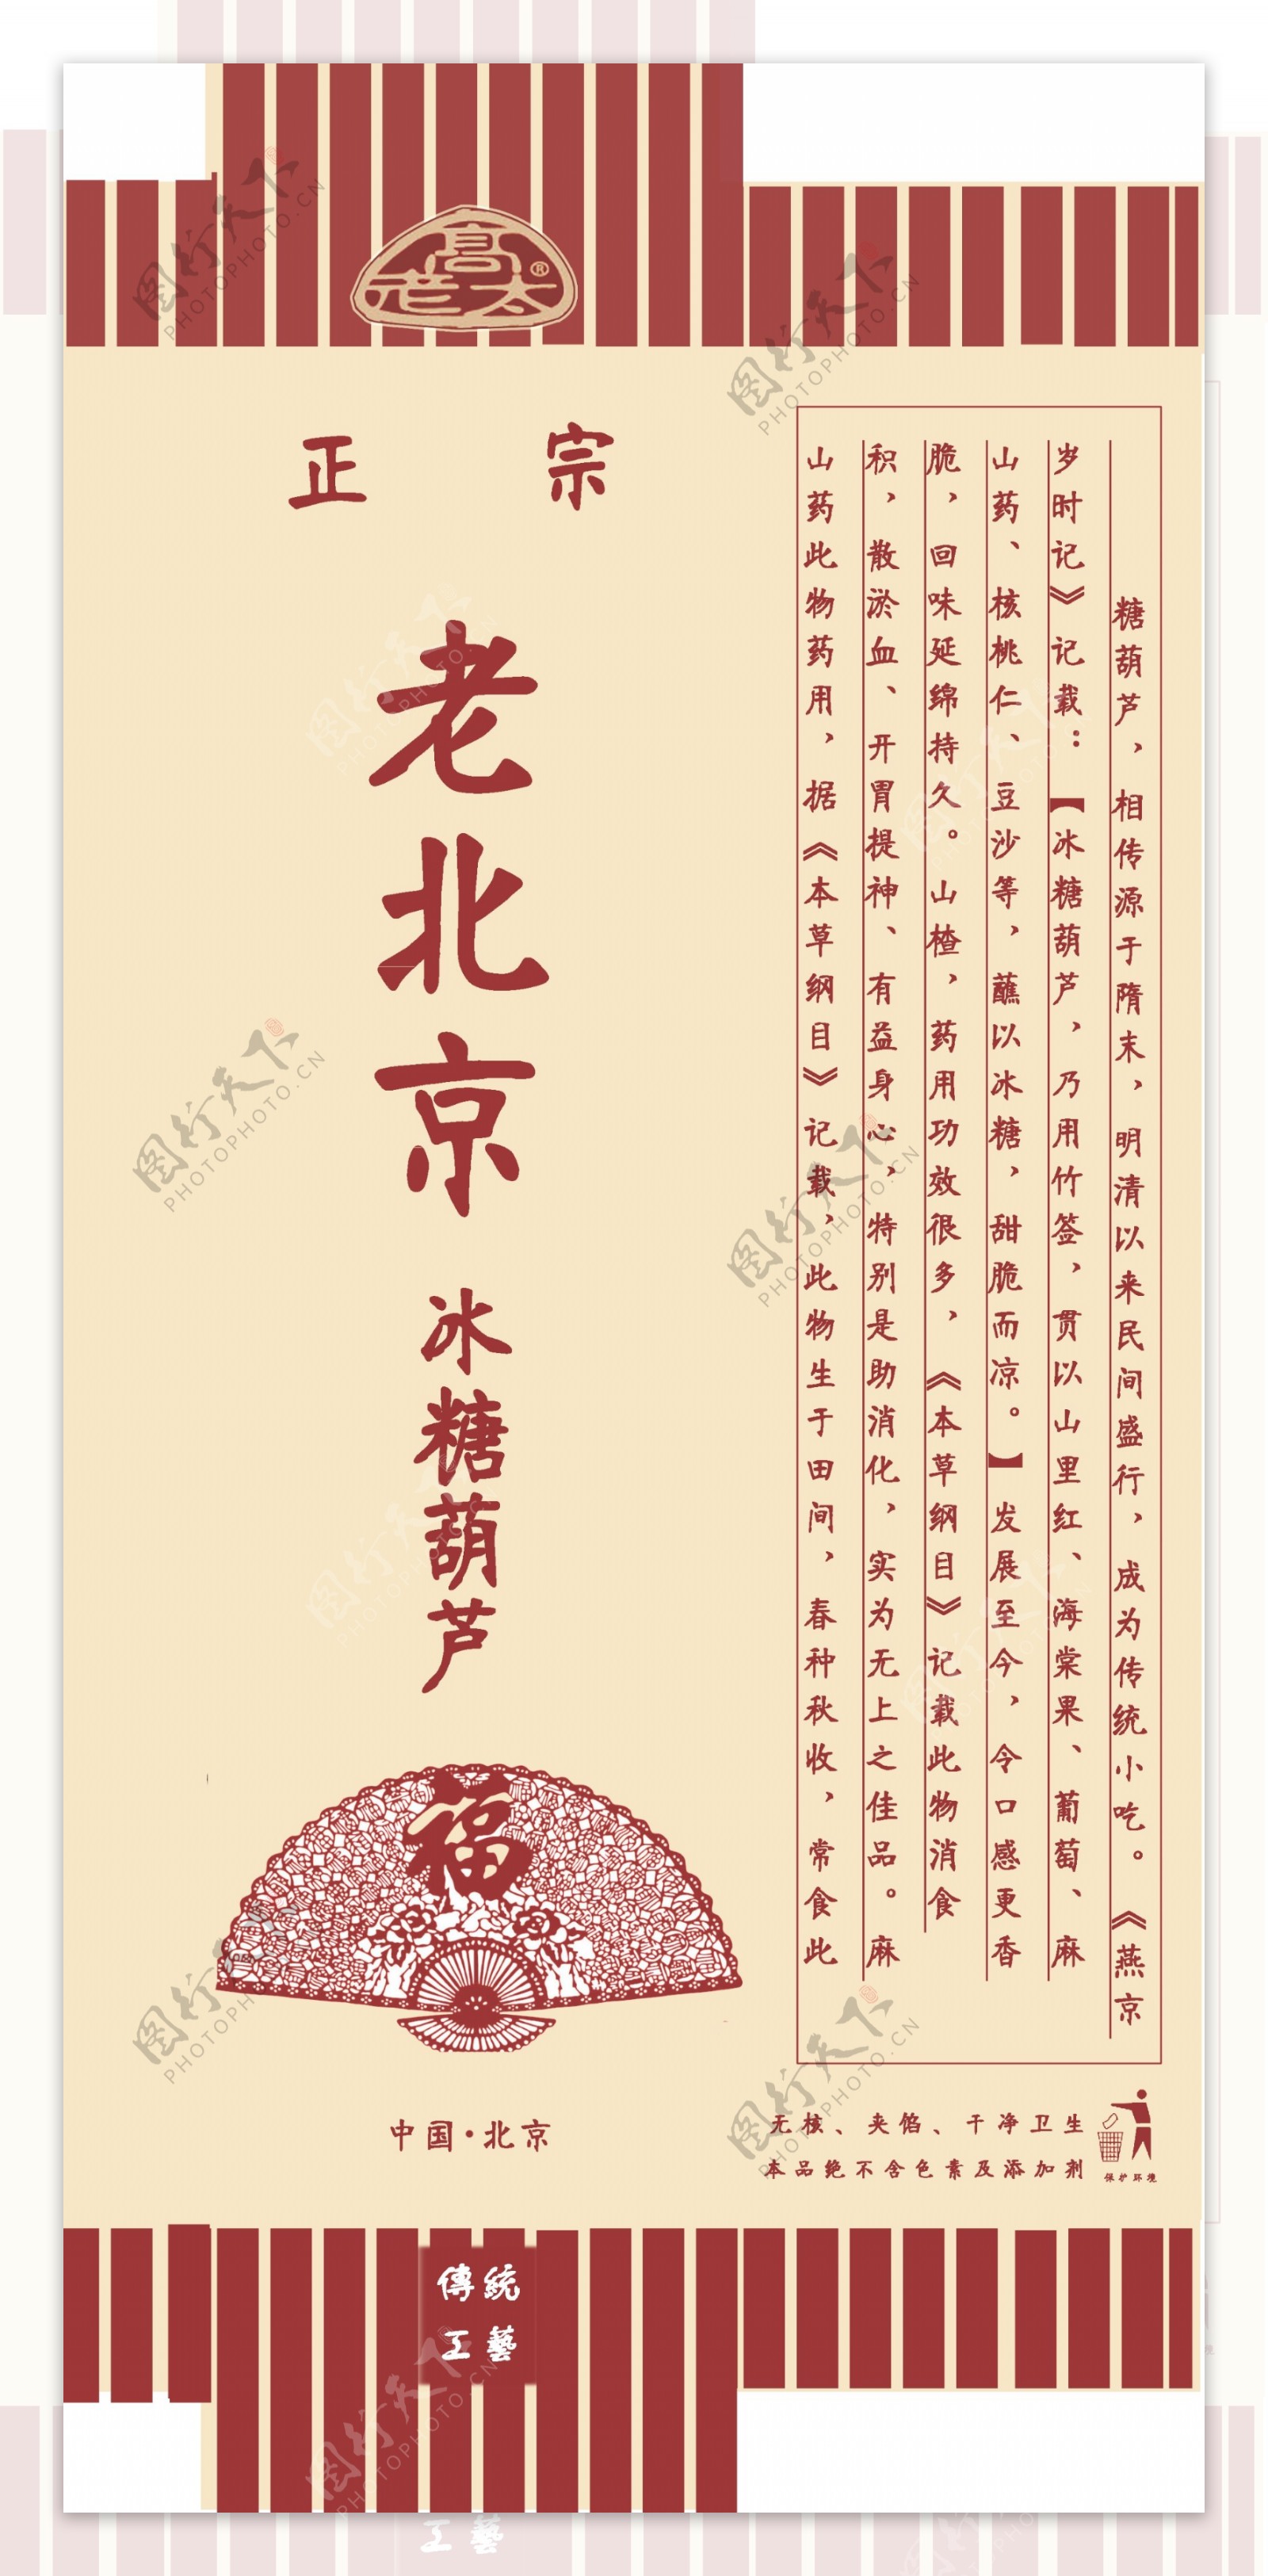 老北京冰糖葫芦包装设计图片